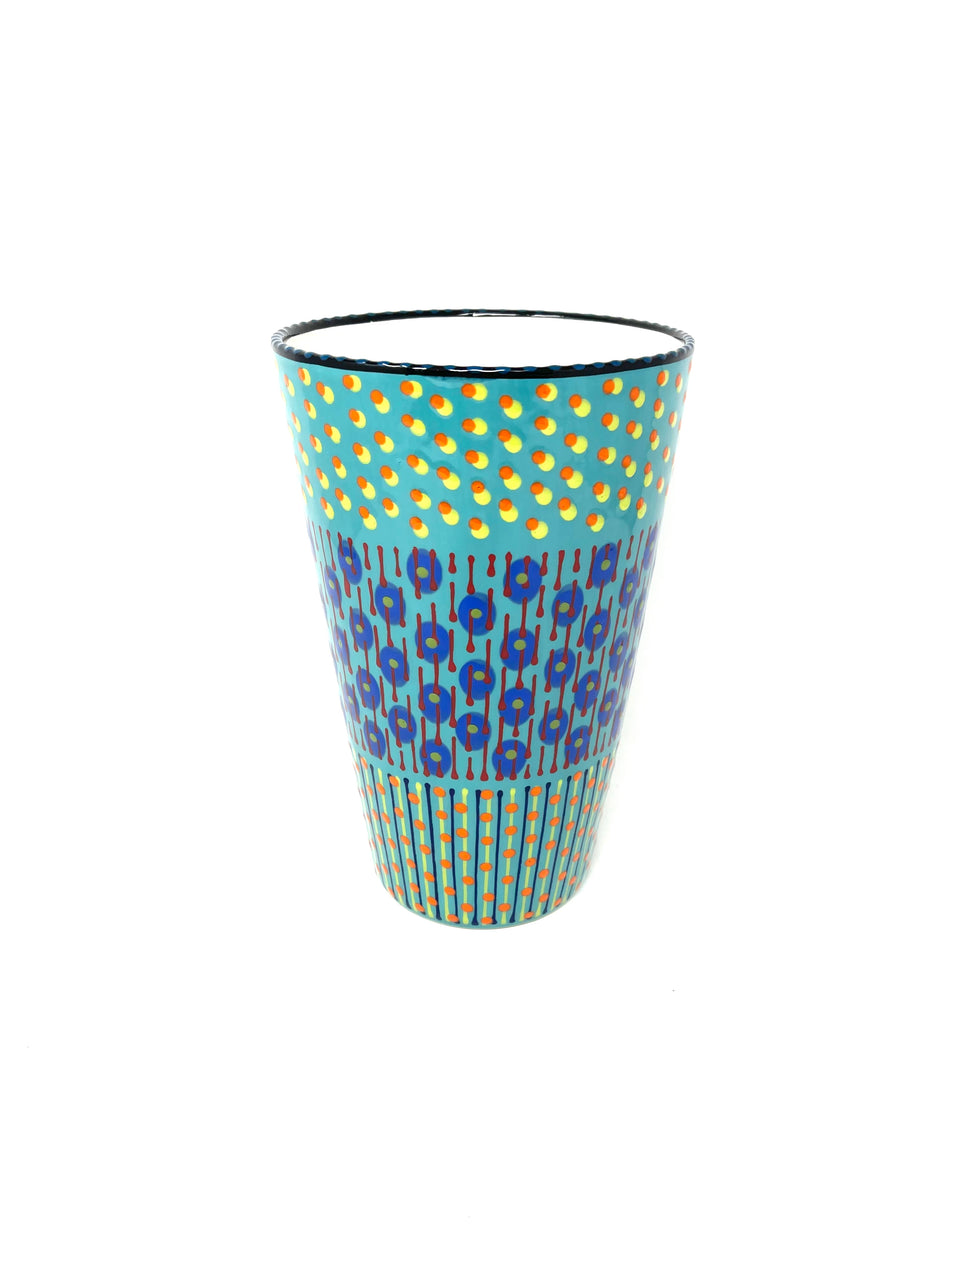 Potters Art Deco Vase